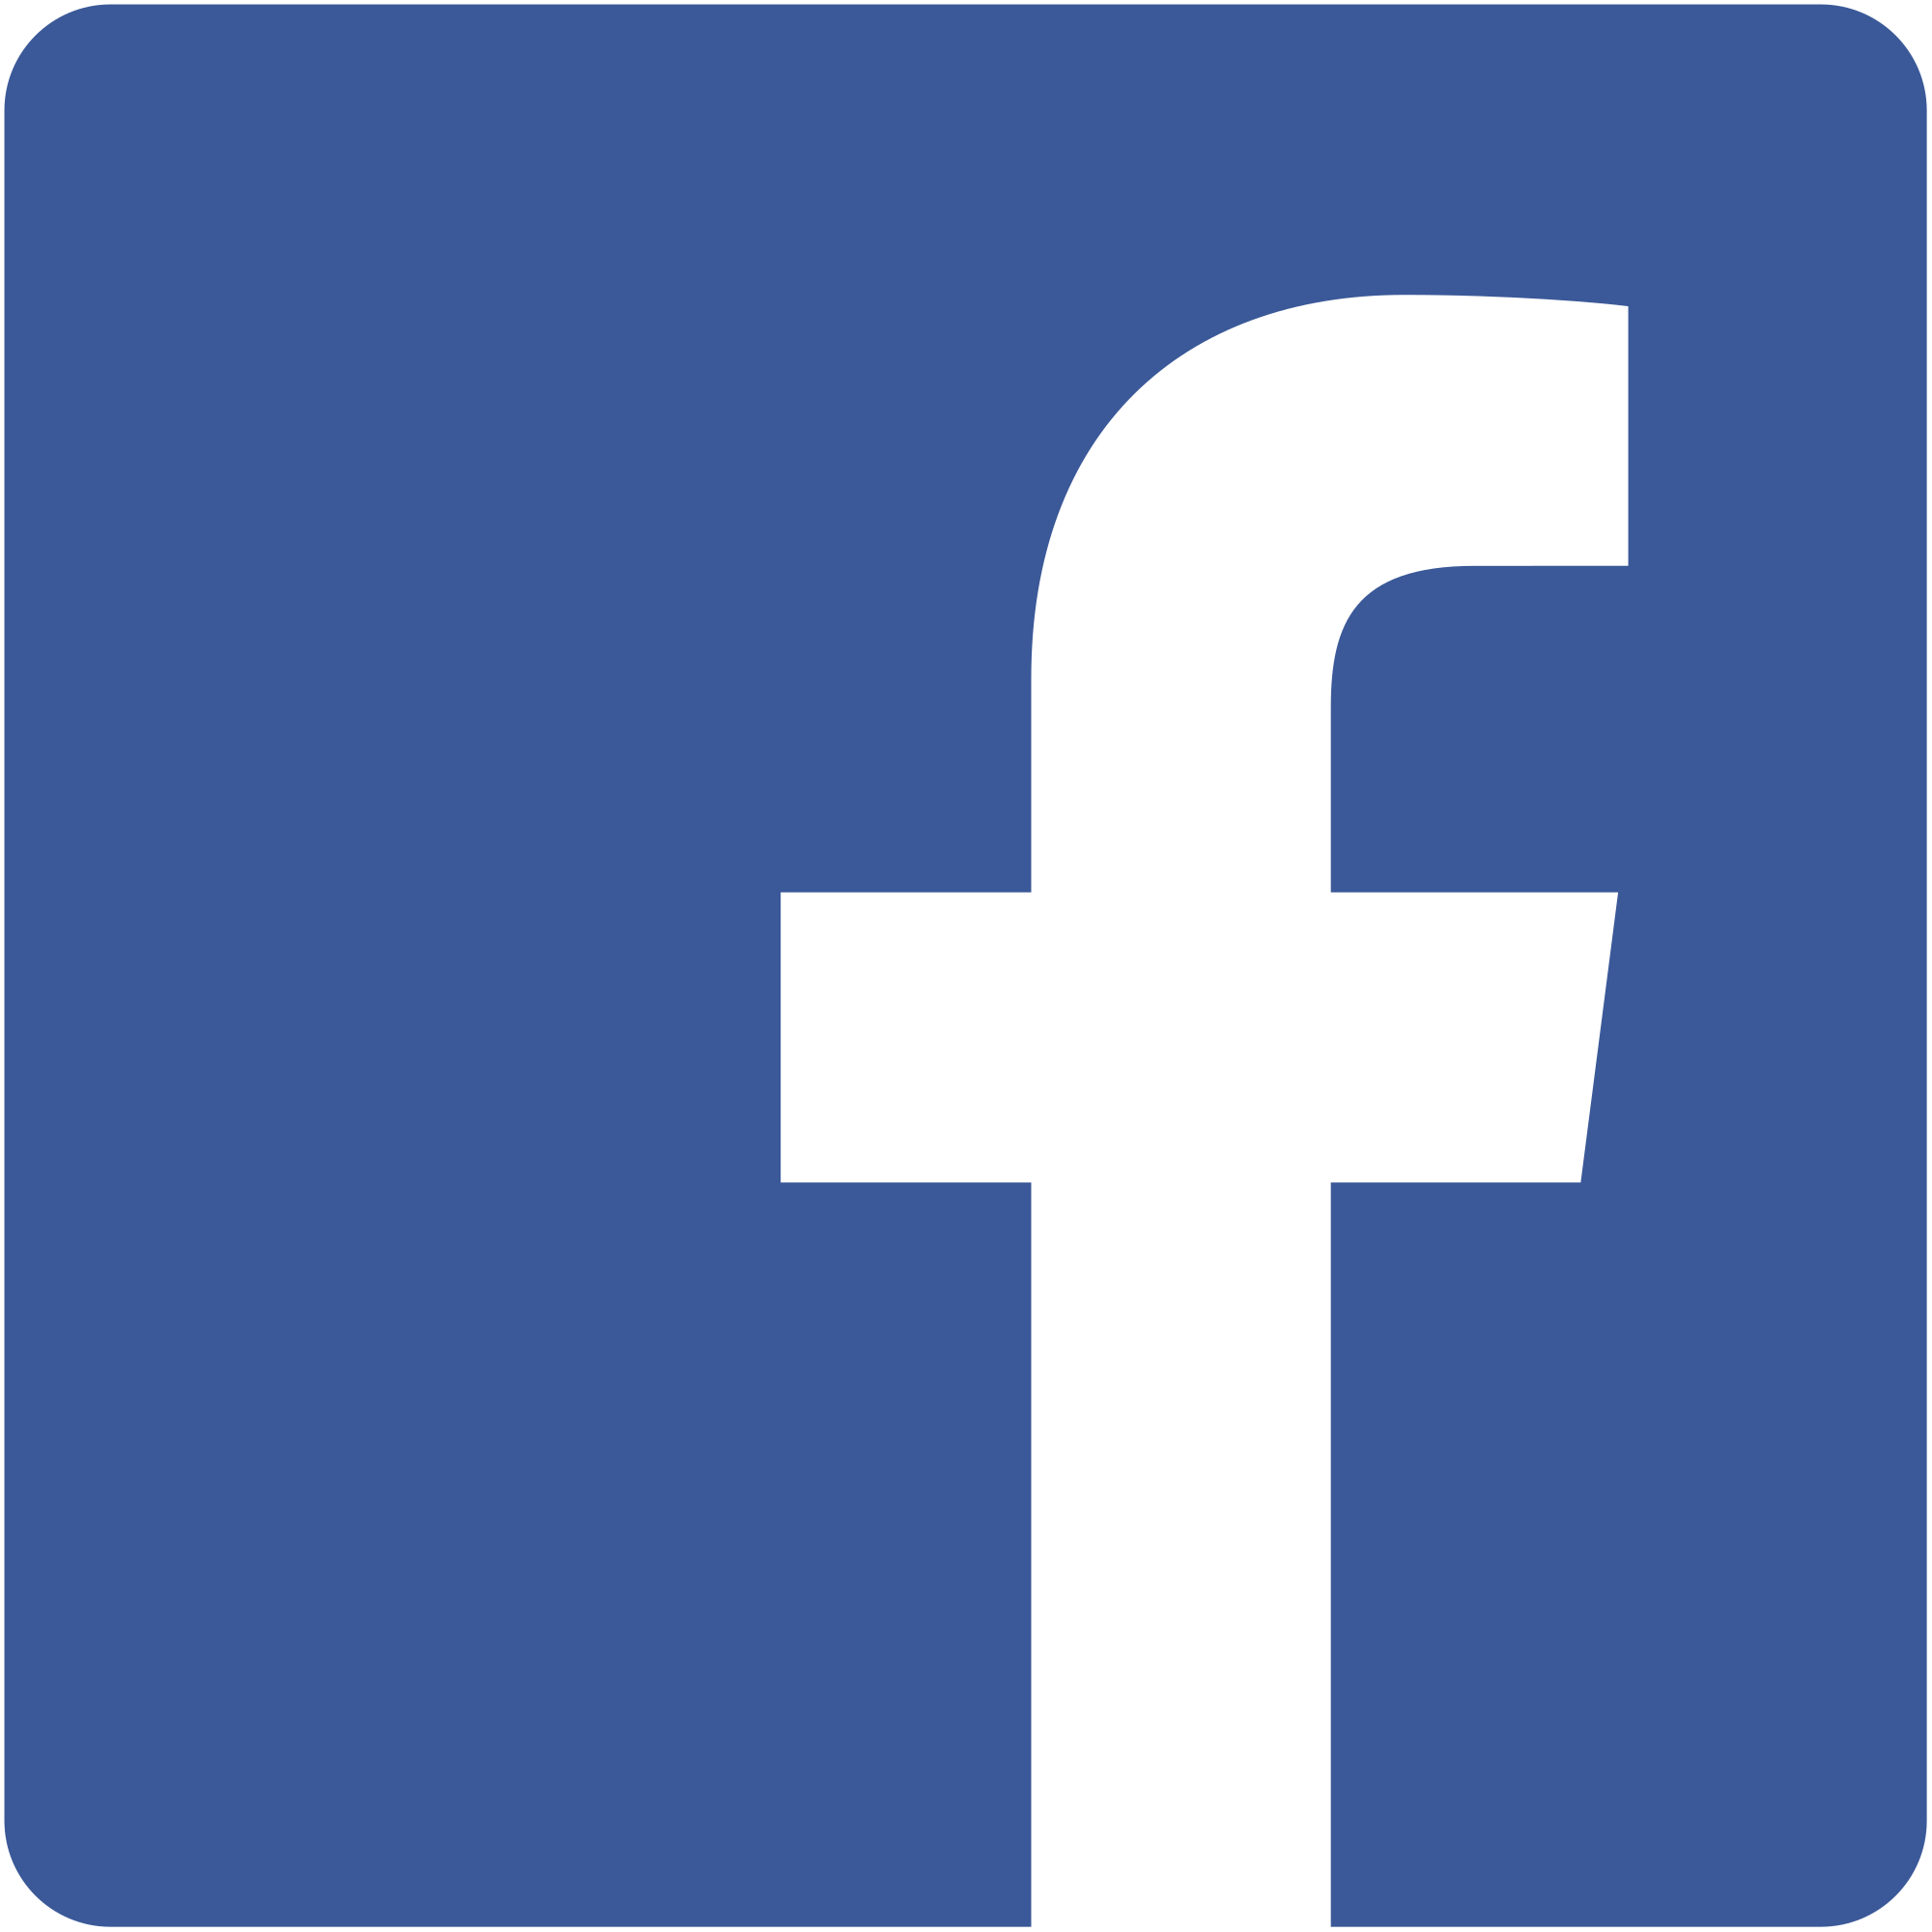 Facebook com dialog. Фейсбук. Эмблема Фейсбук. Символ Фейсбук. Значок фейсбука для визитки.